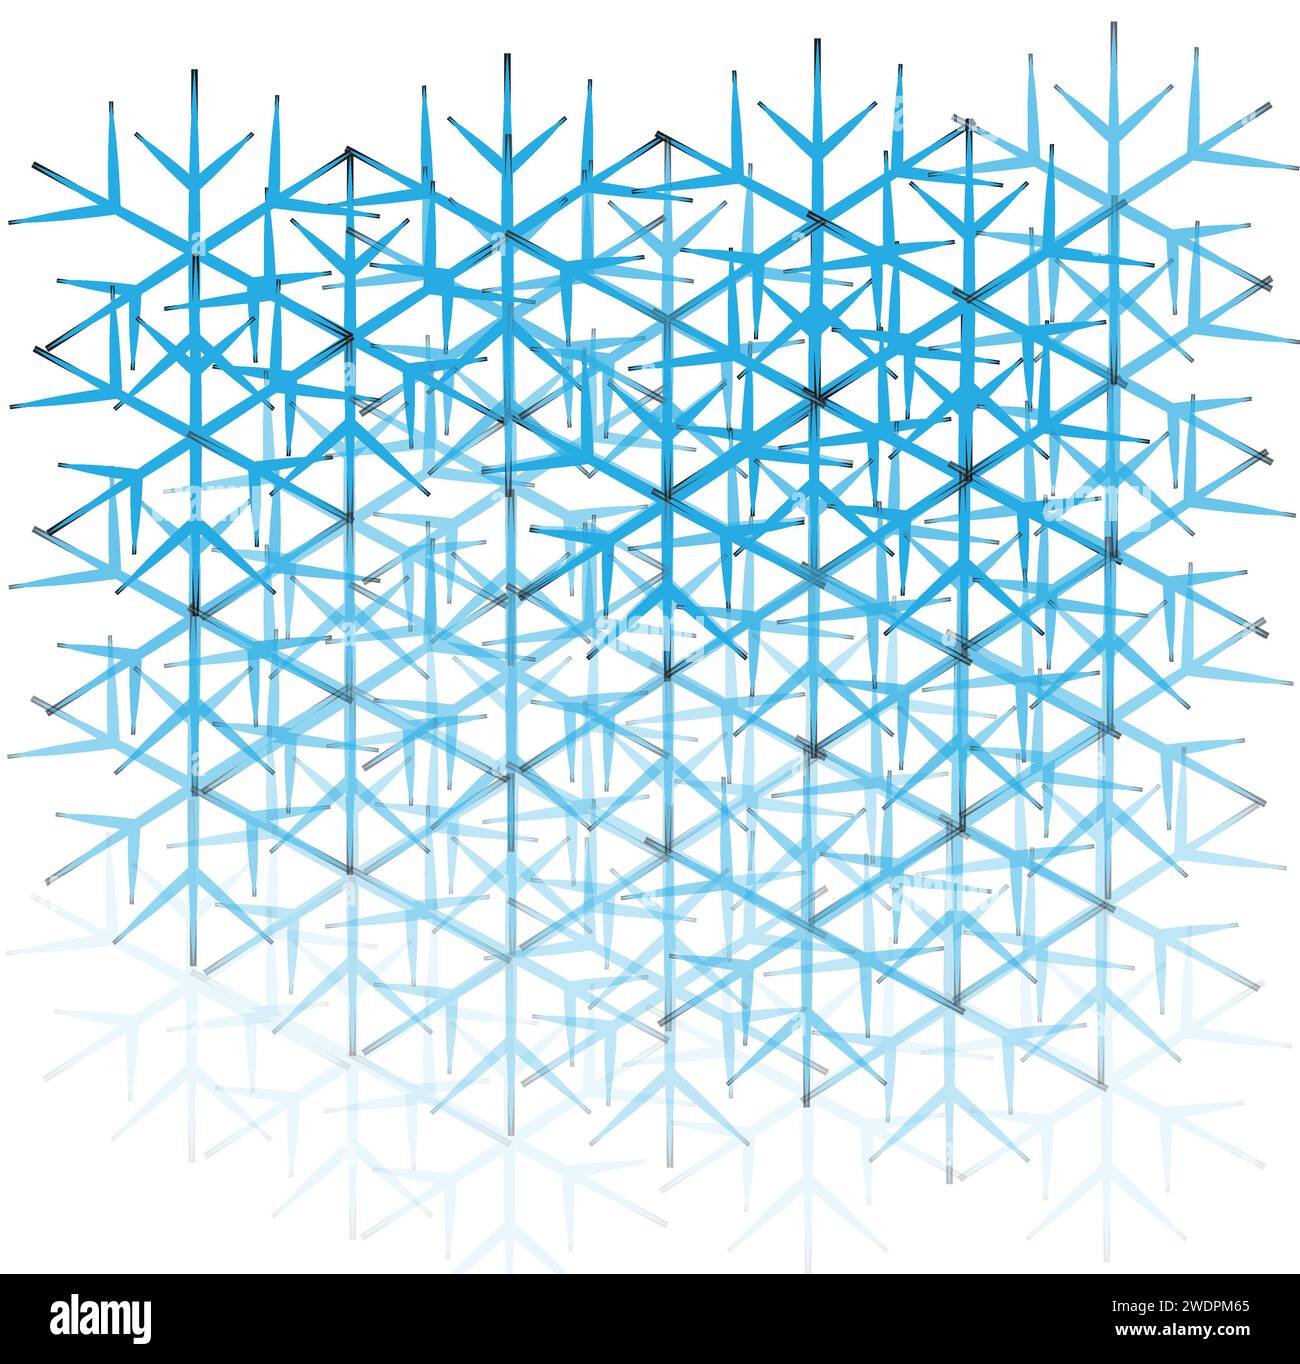 Un art numérique d'une saison hivernale ou de flocons de neige. Banque D'Images